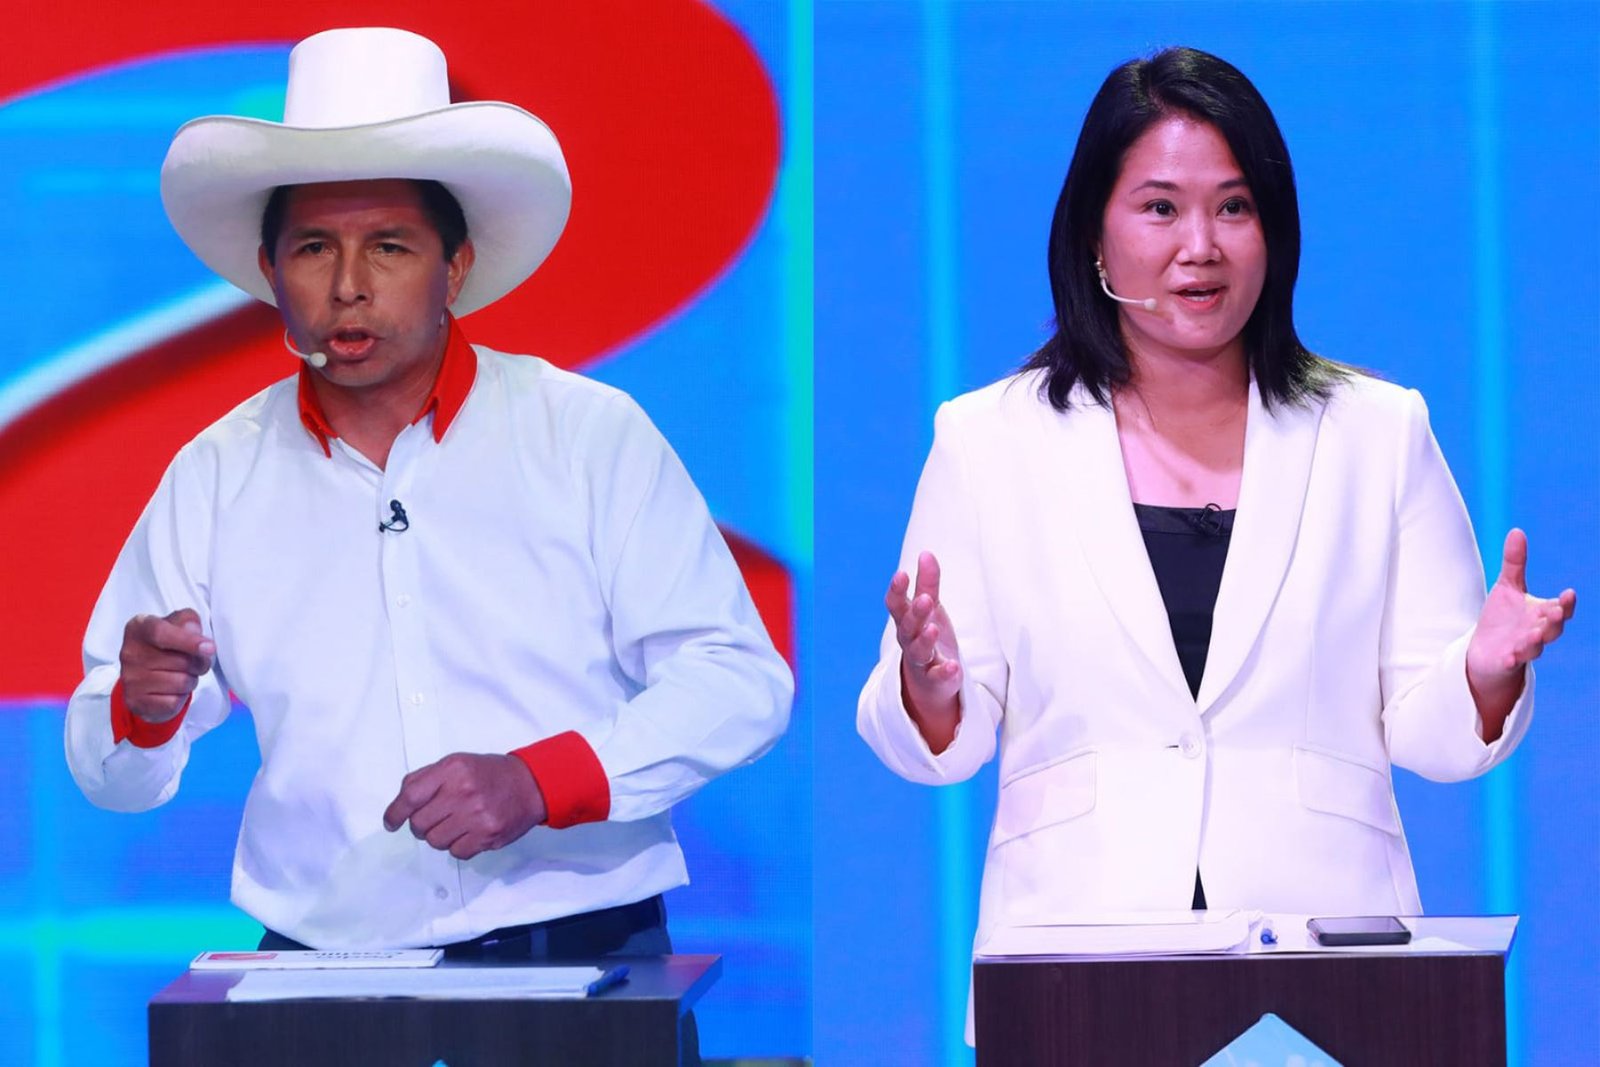 Boca de urna: Keiko Fujimori 50.3 %, Pedro Castillo 49.7 %